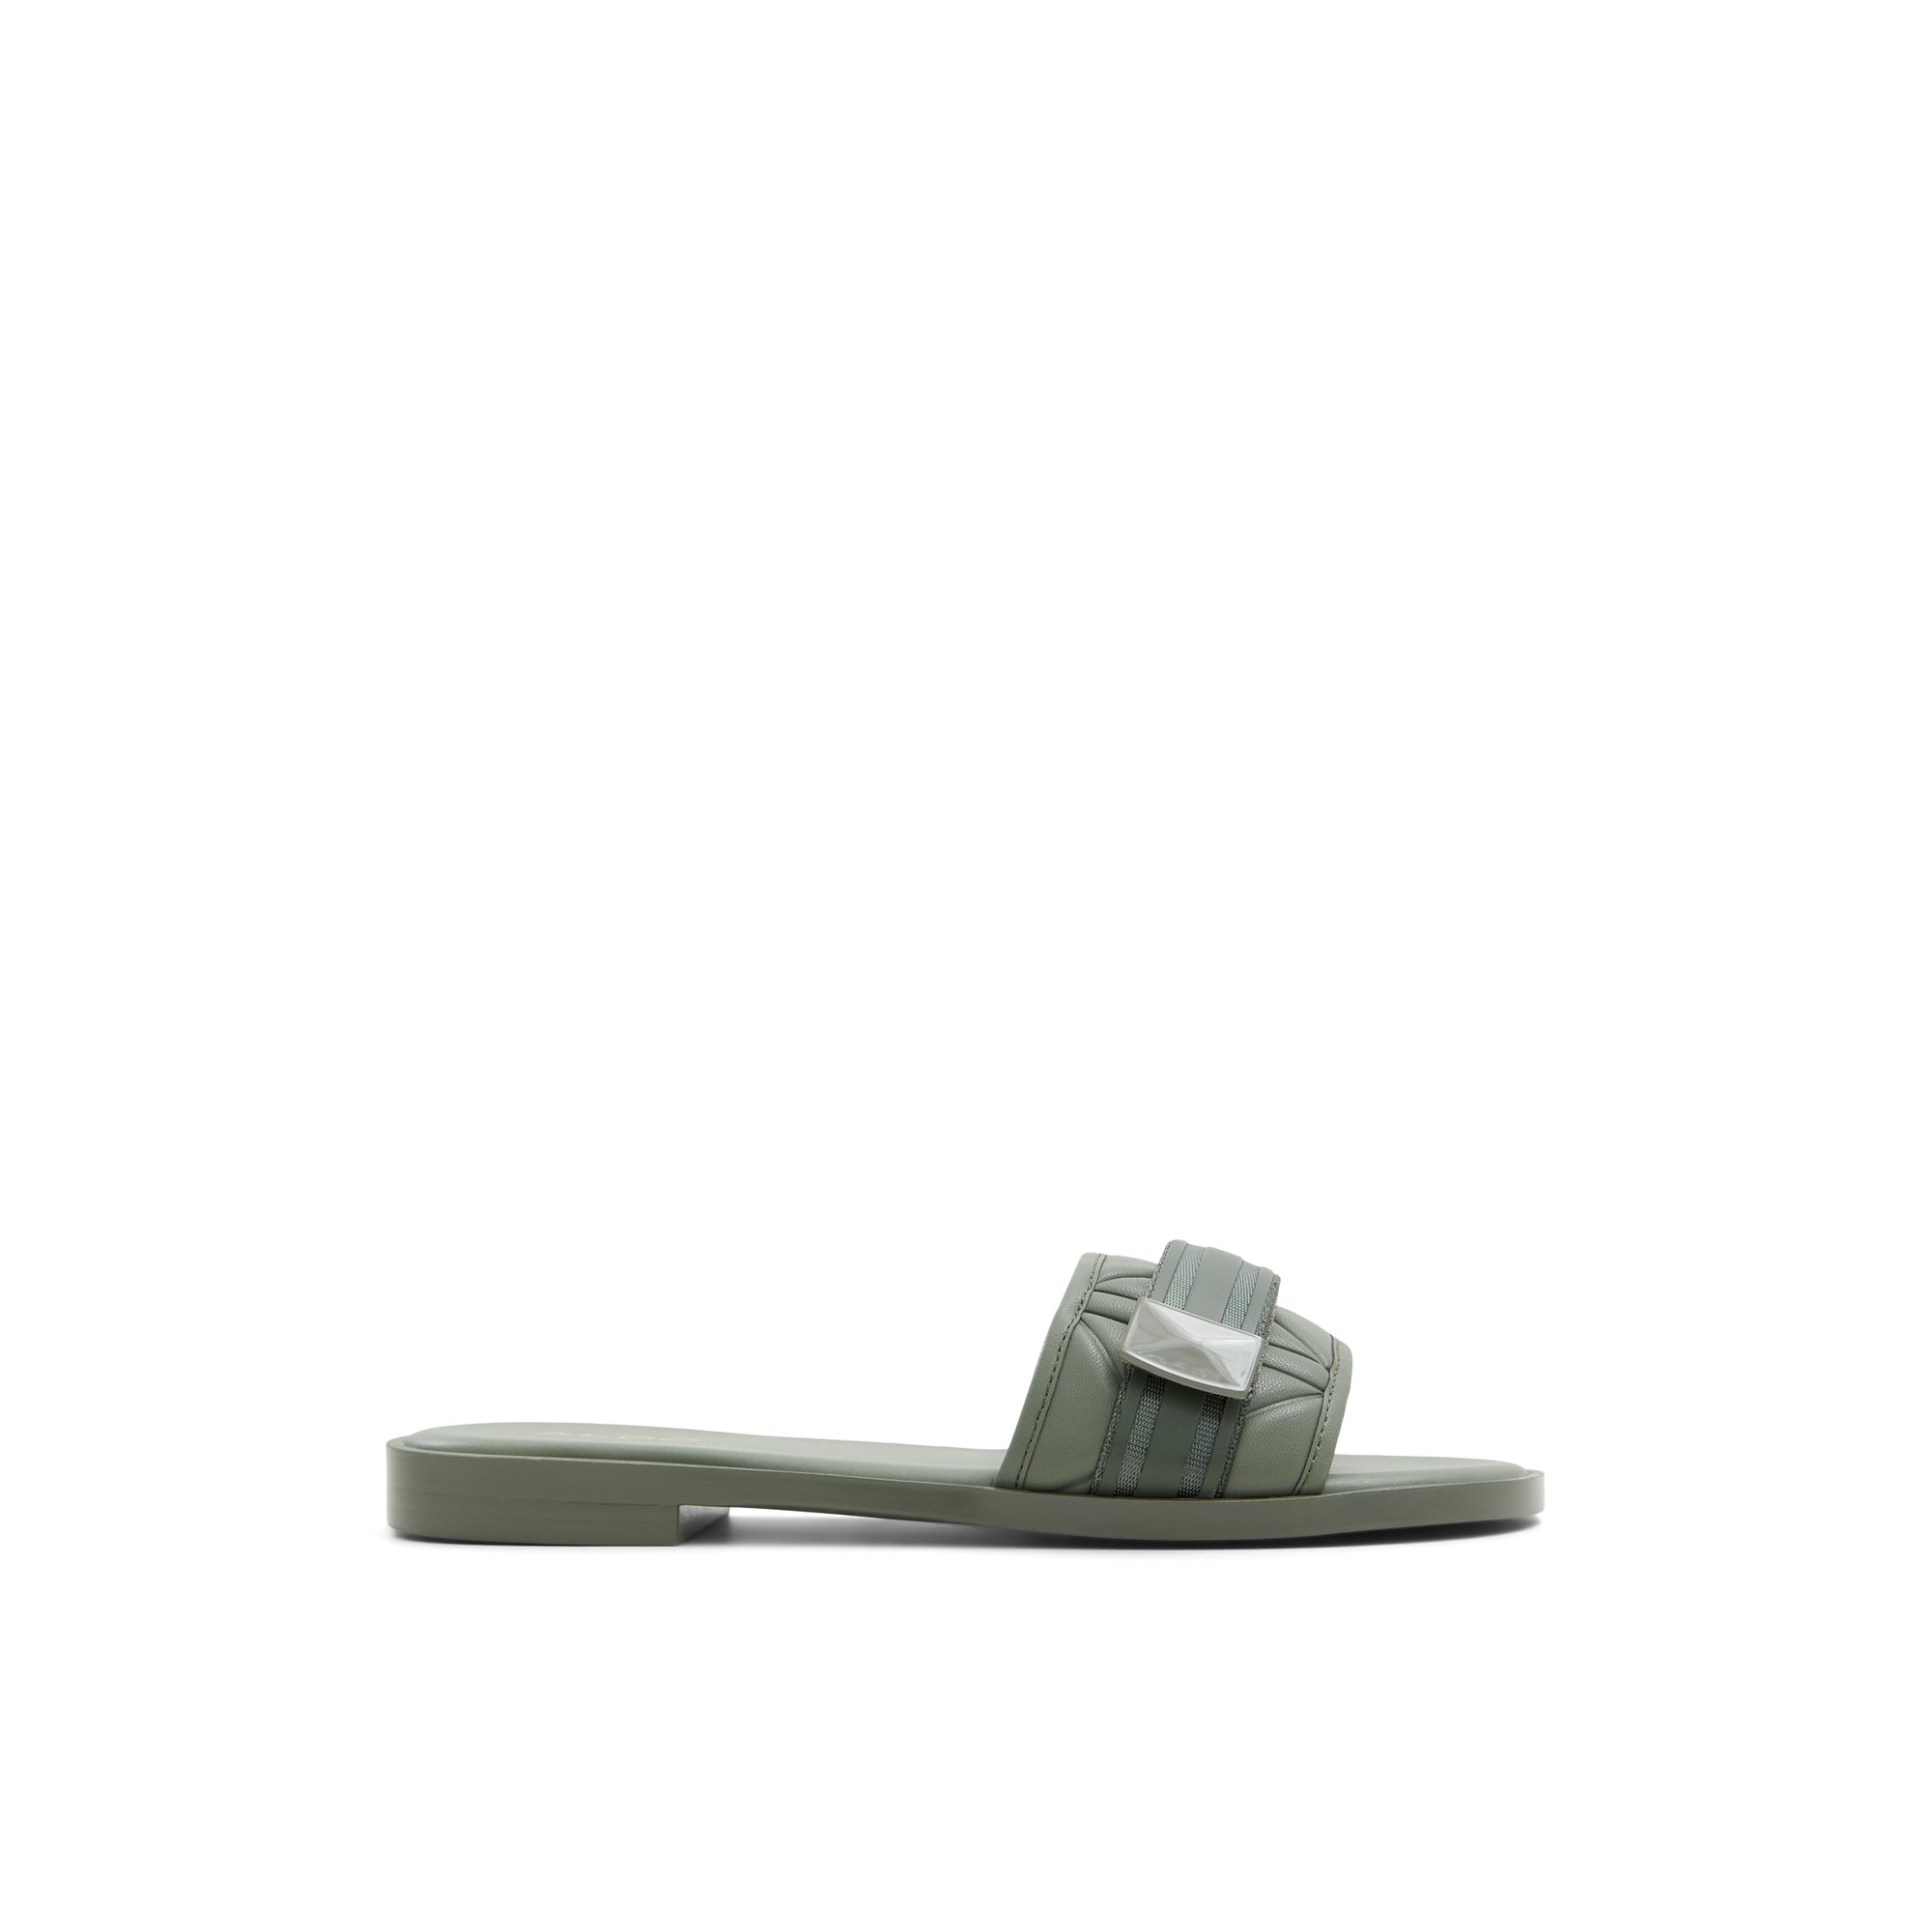 ALDO Mana - Women's Flat Sandals - Beige